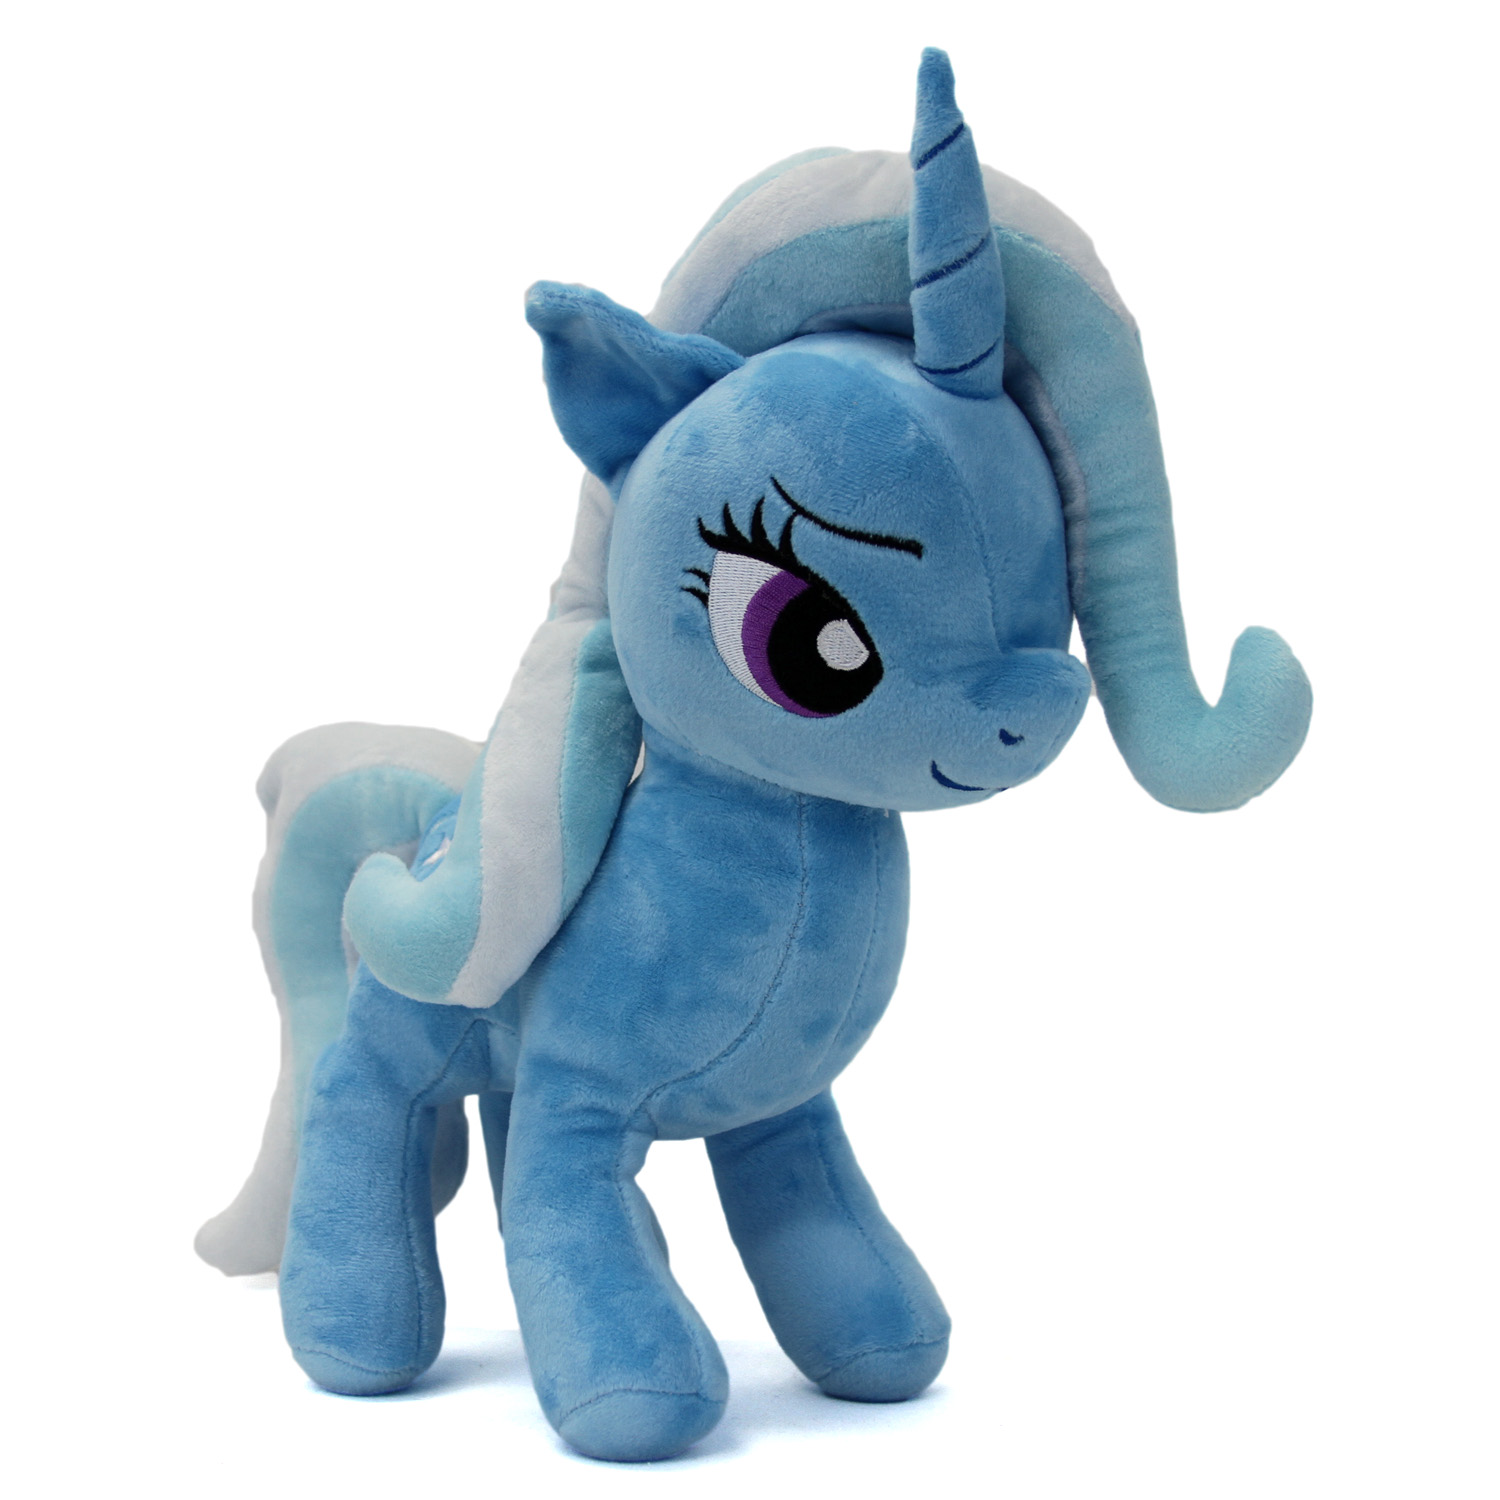 Mein Kleines Pony Trixie Lulamoon Plüsch Schneemann Plush Doll L'Friendship Is 